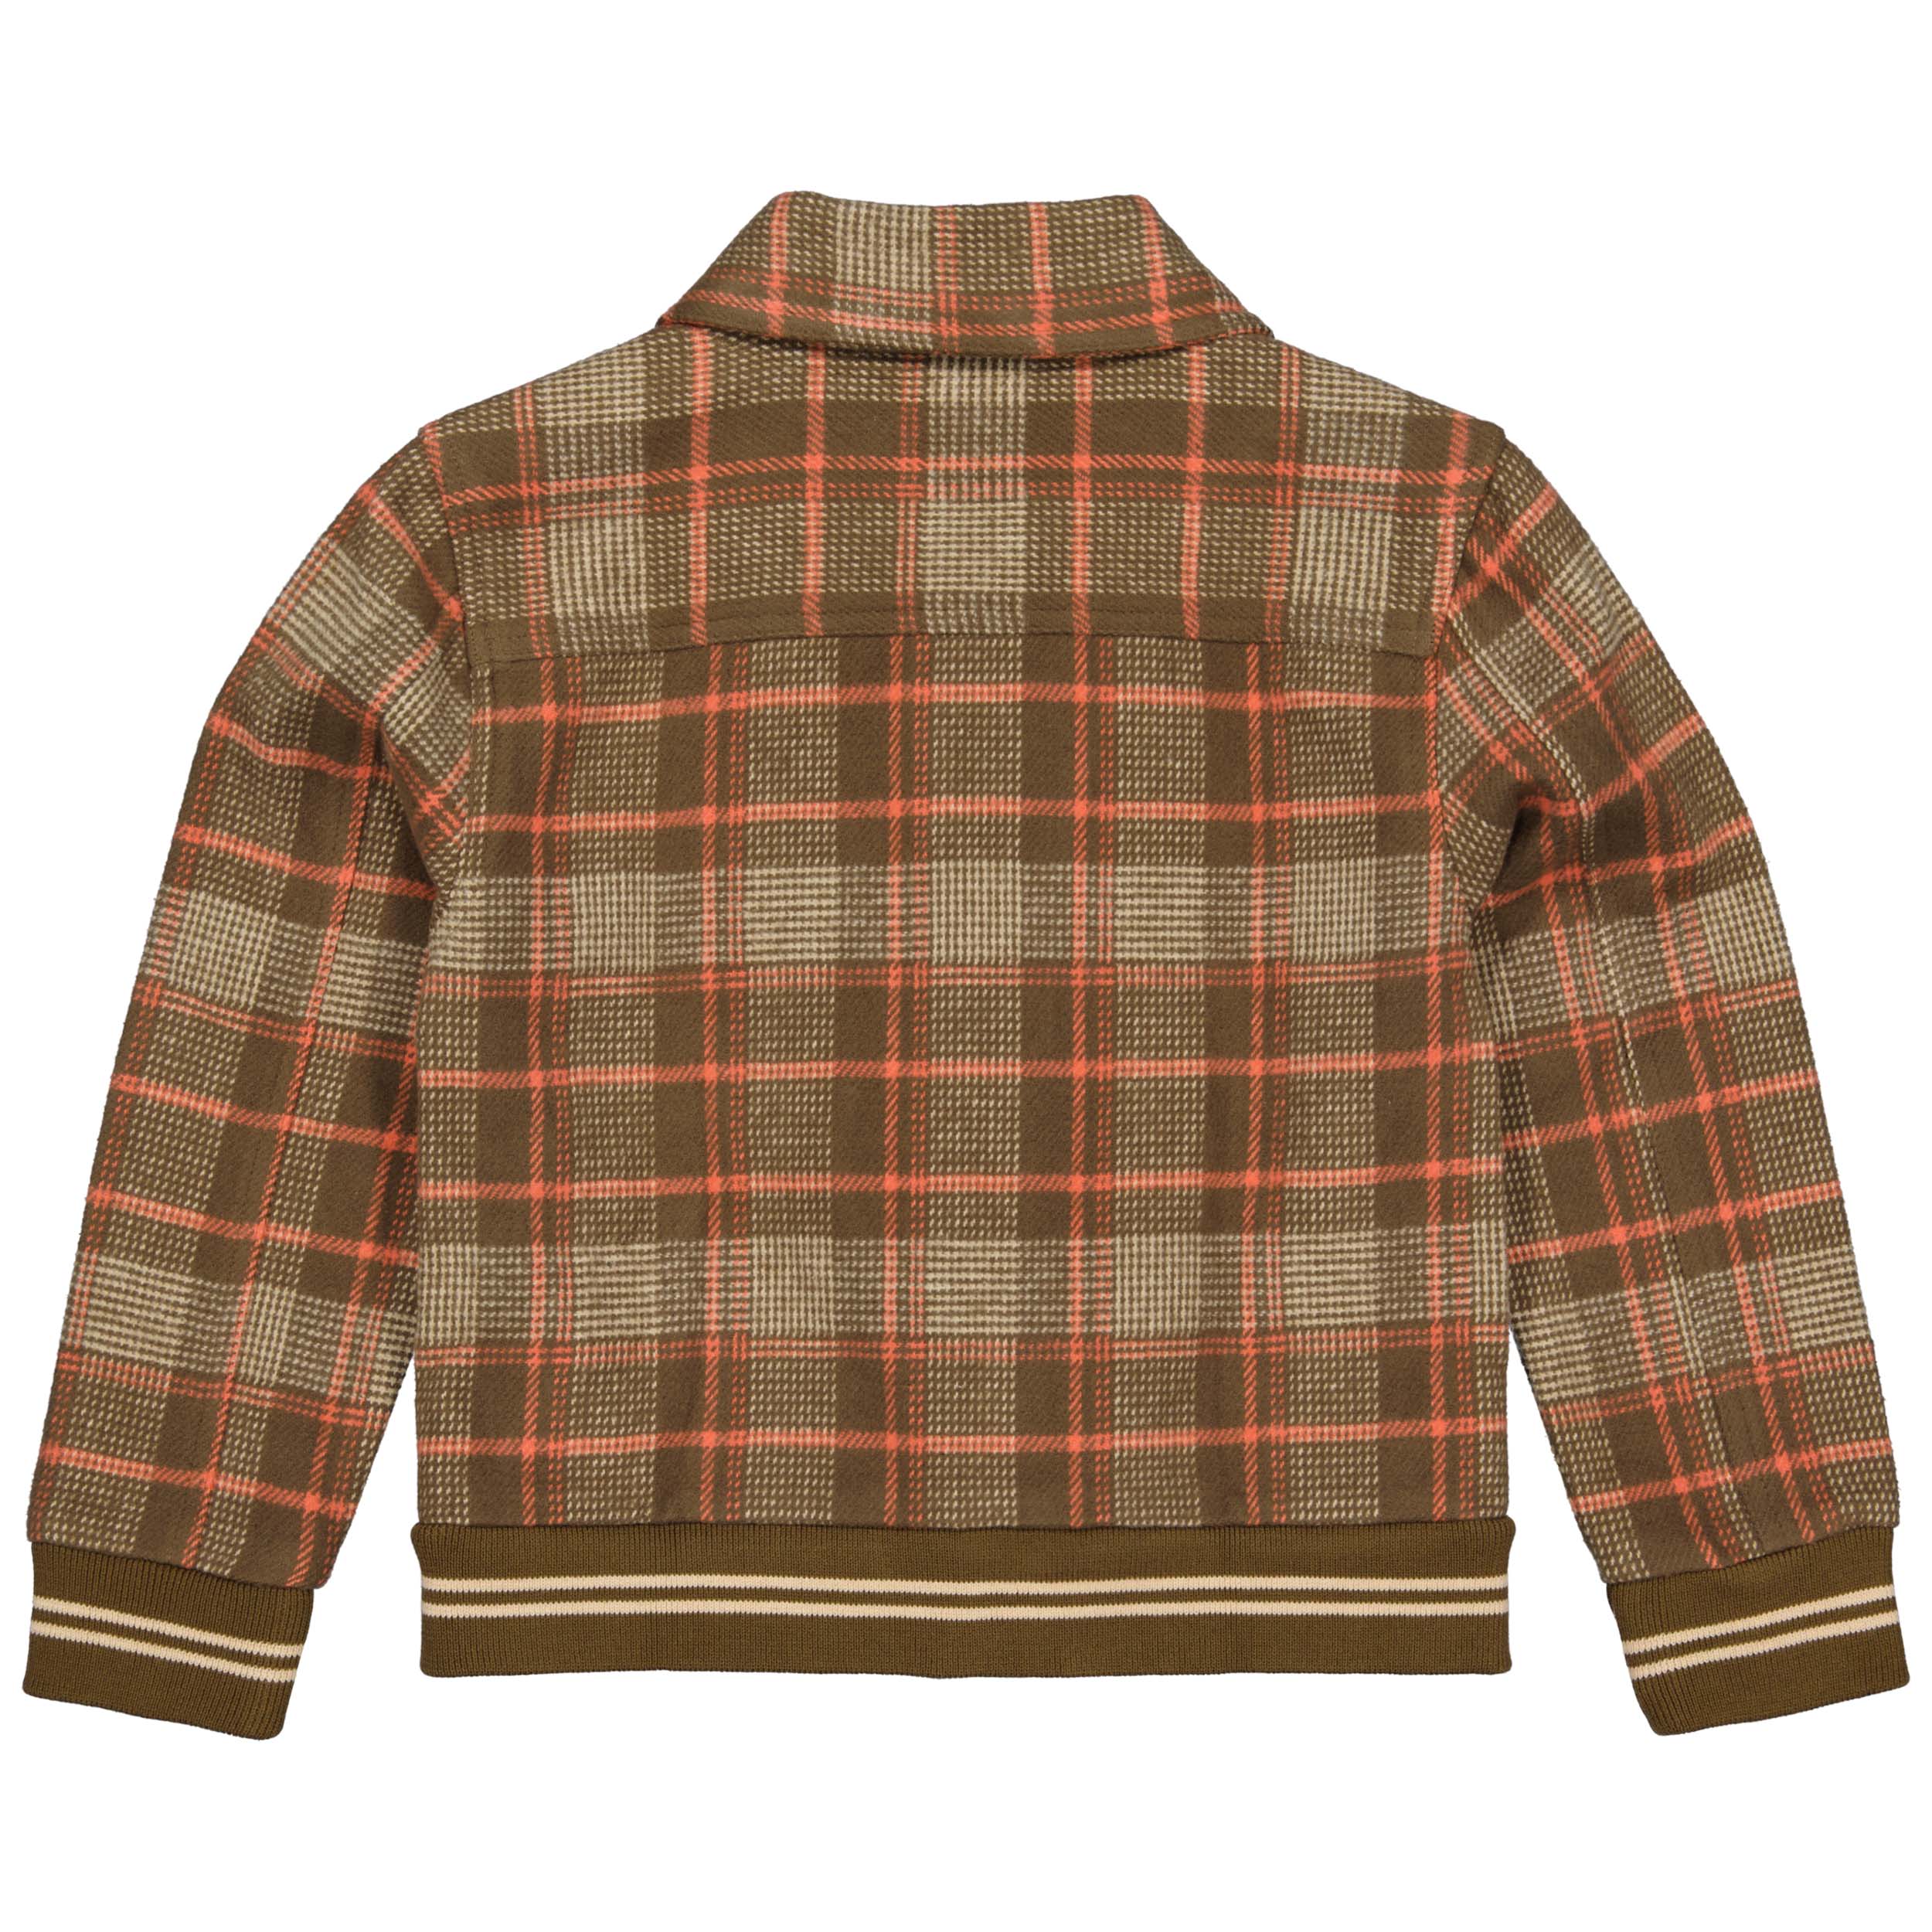 Jongens Sweater ANNOQW231 van Quapi in de kleur AOP Brown Check in maat 134-140.